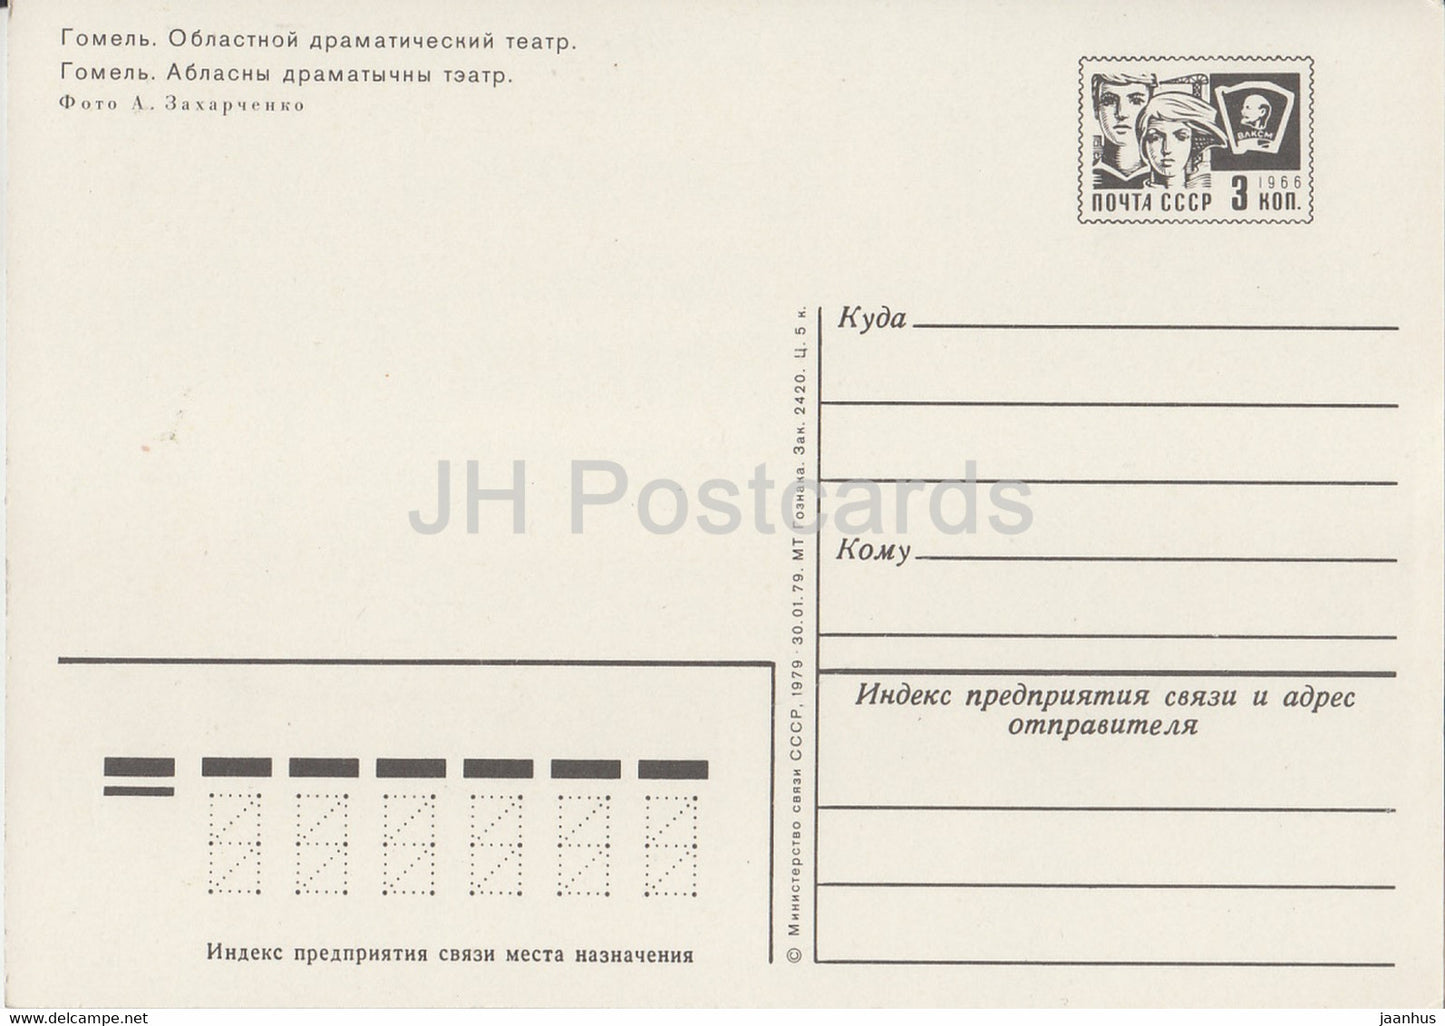 Gomel - Regional Drama Theatre - postal stationery - 1979 - Belarus USSR - unused